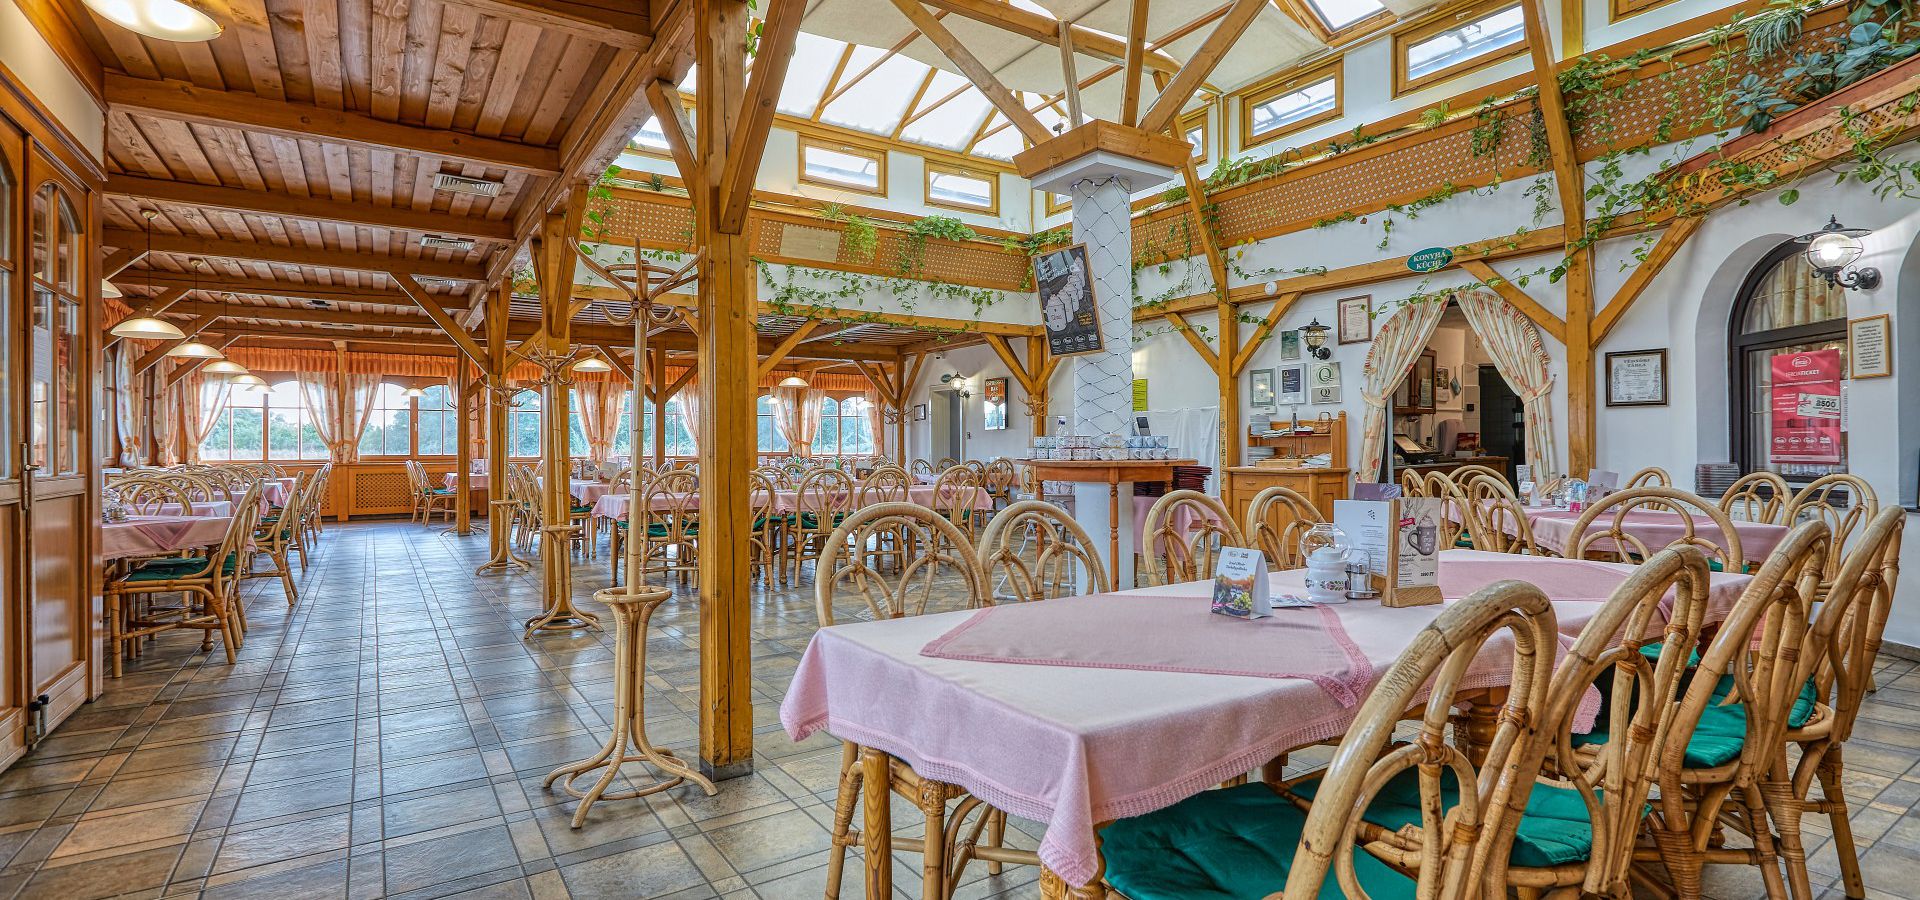 Reserve a table at the Tercia Fertőendréd Restaurant!